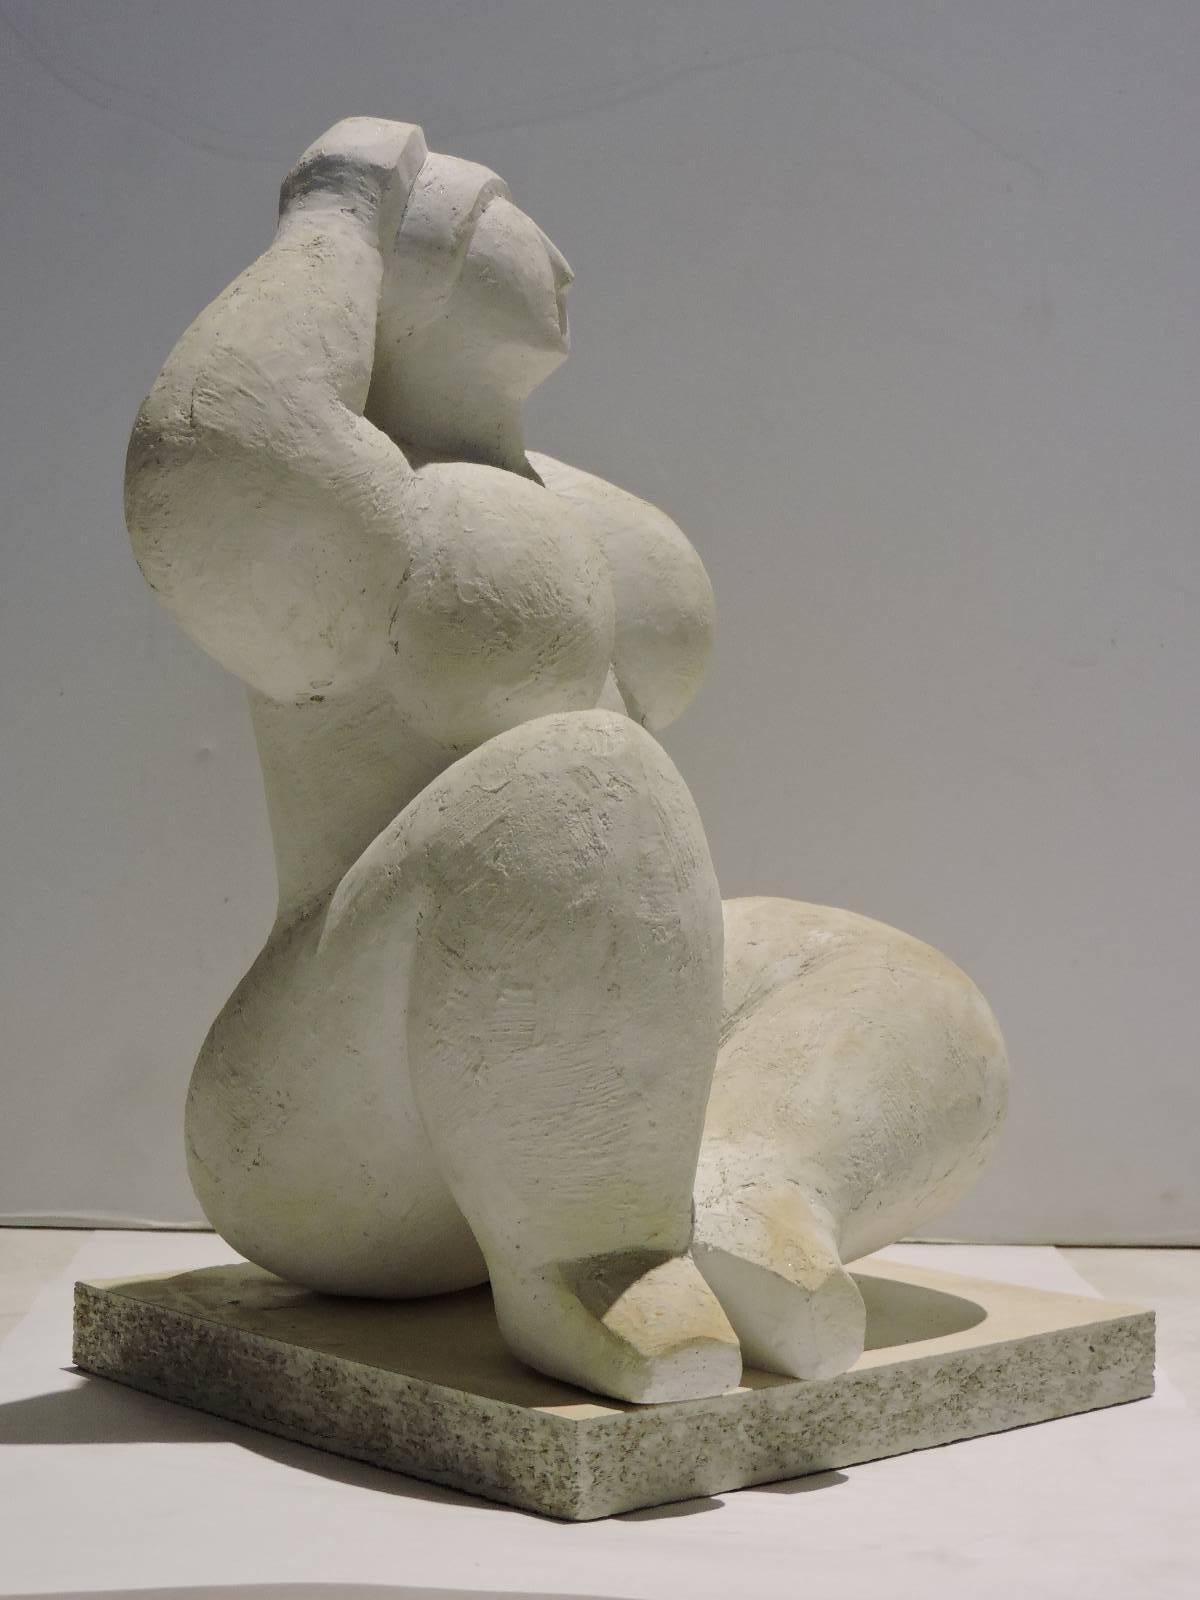 20th century sculptures